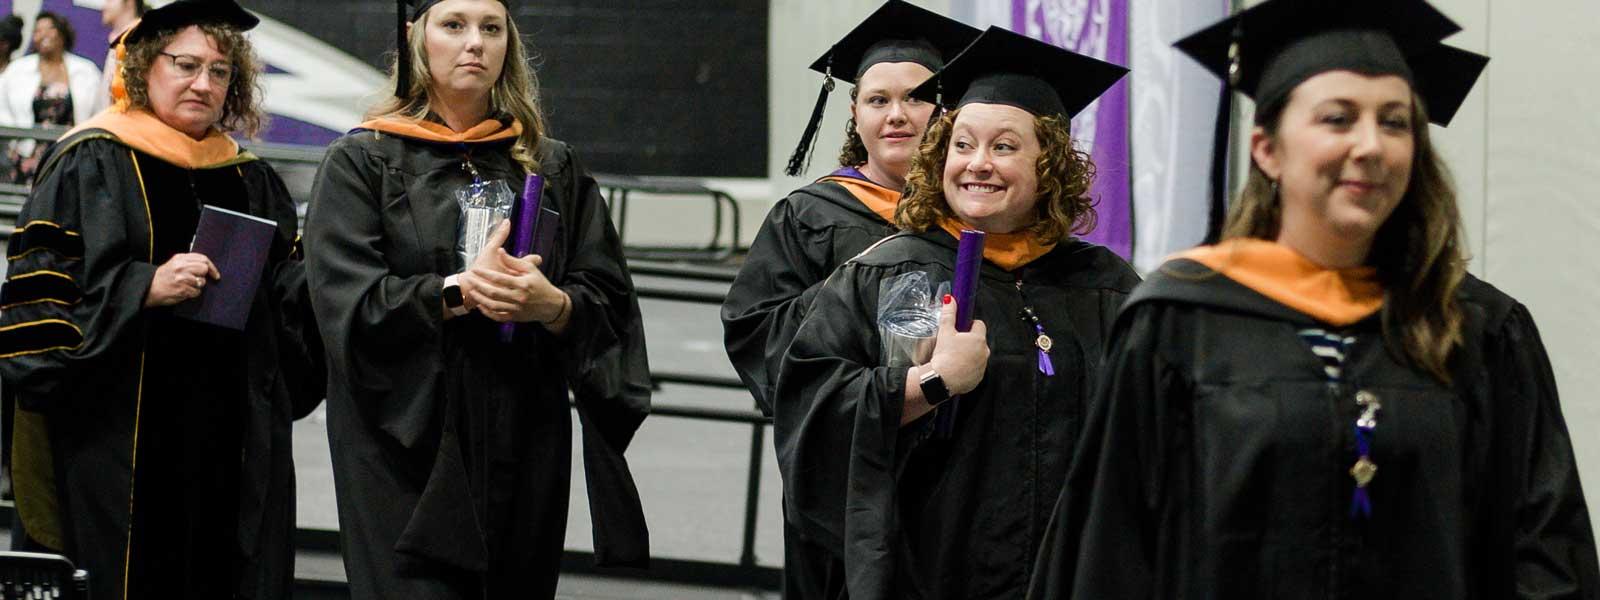 护理硕士毕业生毕业时都带着毕业证书